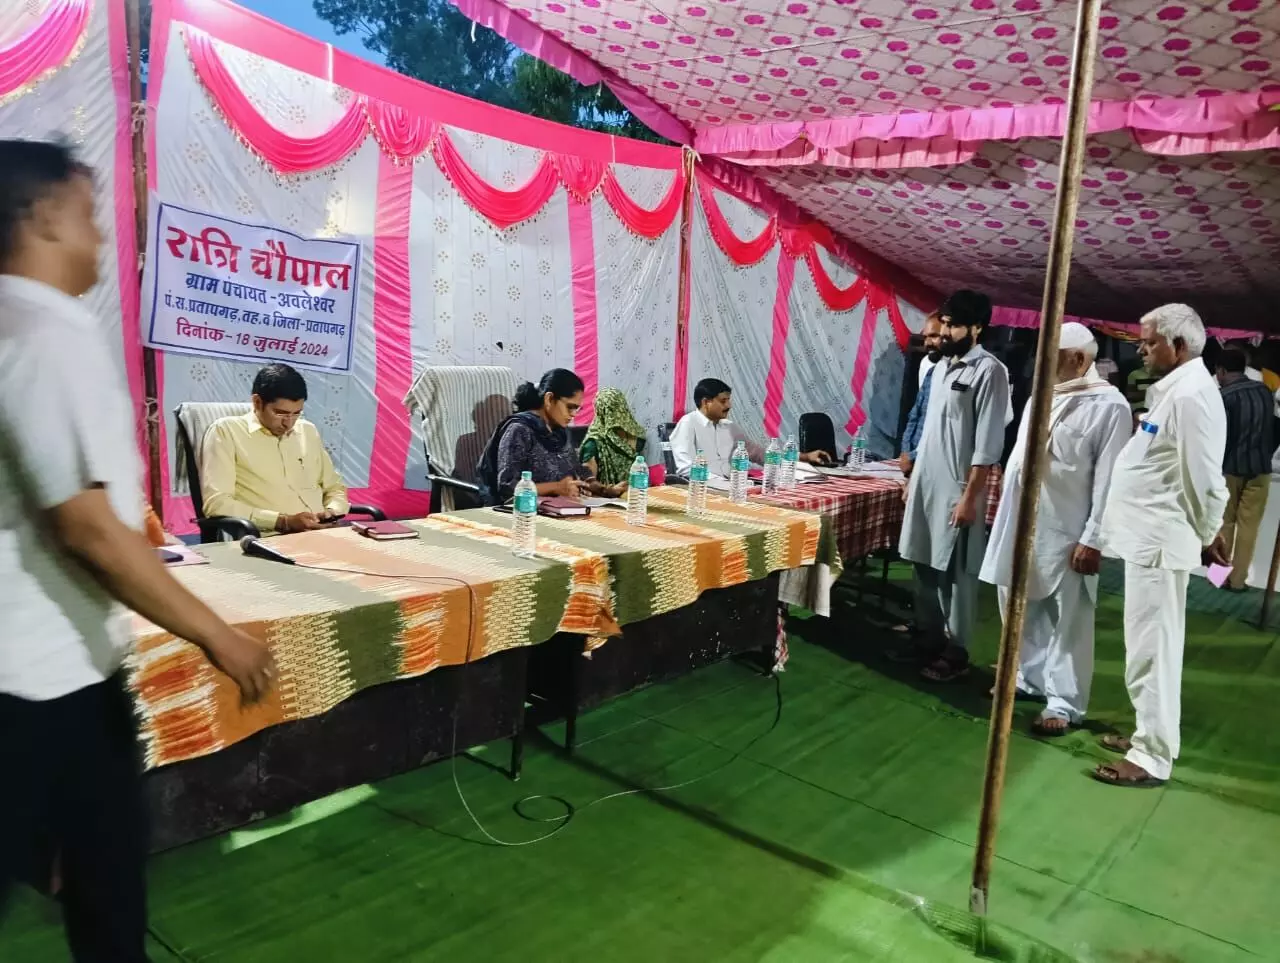 Pratapgarh : अवलेश्वर में आयोजित हुई रात्रि चौपाल से मिल रही है आमजन को राहत